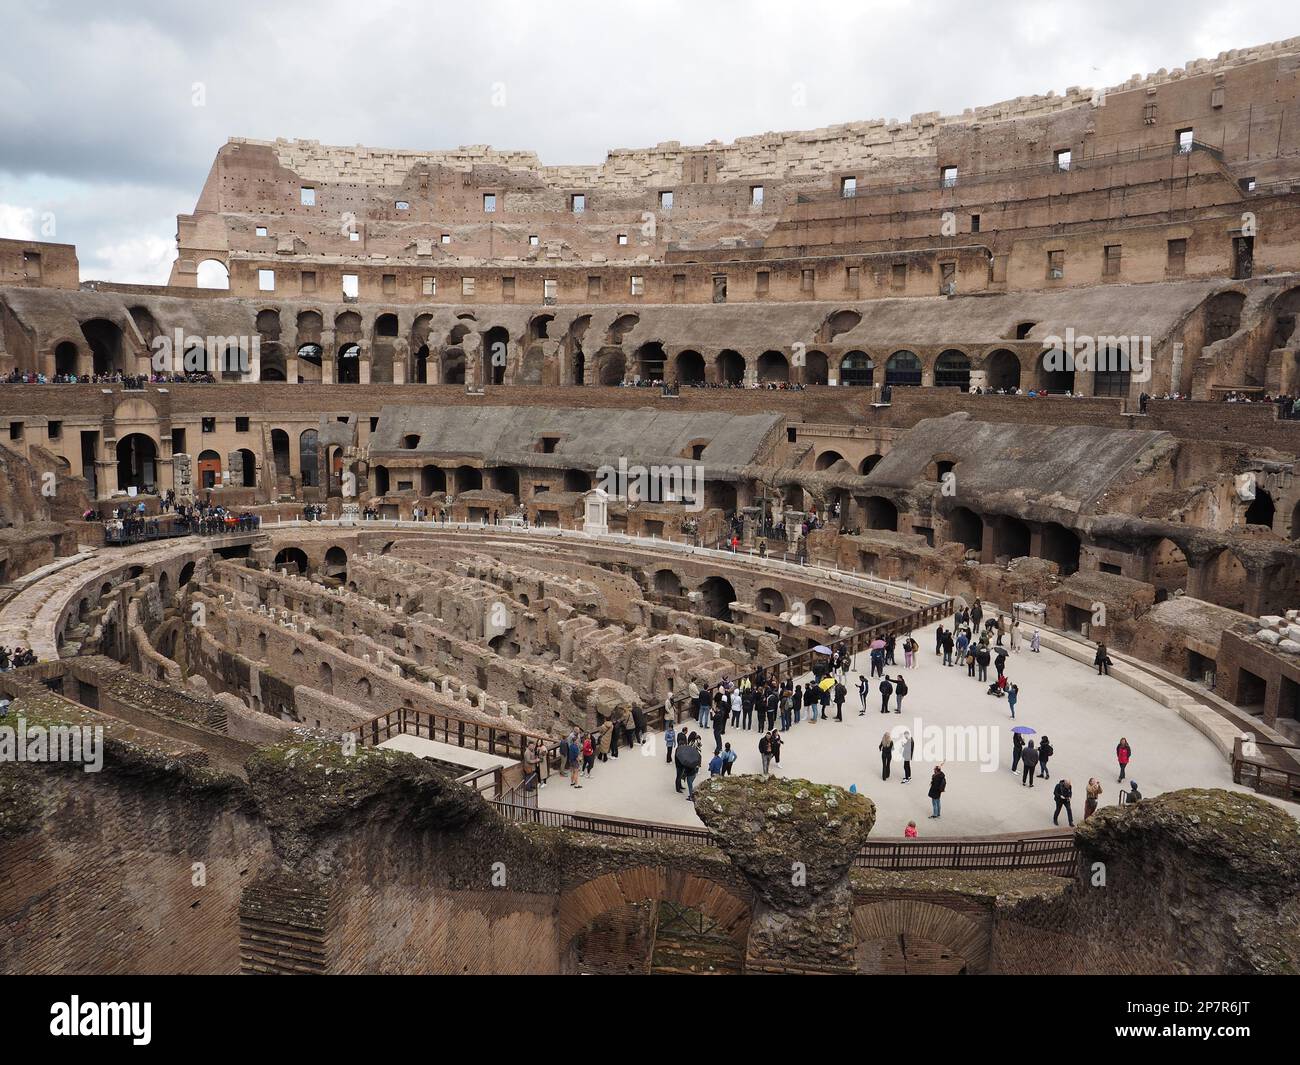 Le Colisée est l'une des principales attractions touristiques de Rome, en Italie. Ce cliché de l'intérieur montre les structures sous le sol de l'arène, et beaucoup de visi Banque D'Images